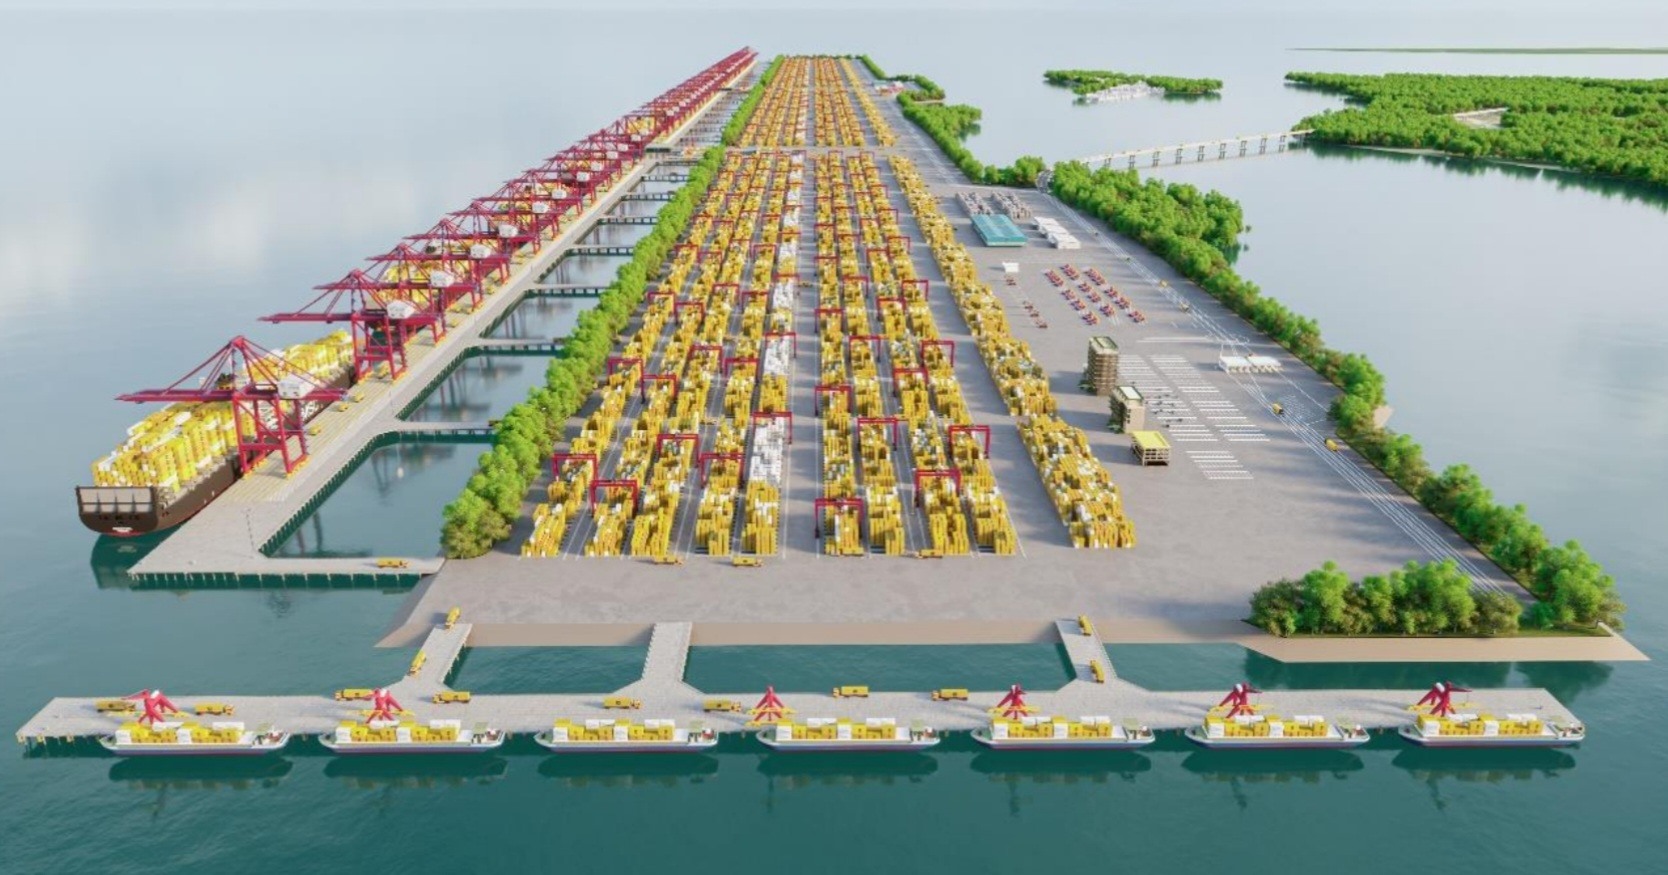 Dự án có quy mô 7,2 km cầu cảng, nhu cầu sử dụng đất khoảng 571 ha. Do đó, cảng có thể tiếp nhận tàu container lớn nhất thế giới hiện nay là 250.000 DWT (tương đương 24.000 TEUs - một TEUs tương đương container loại 20 feet).